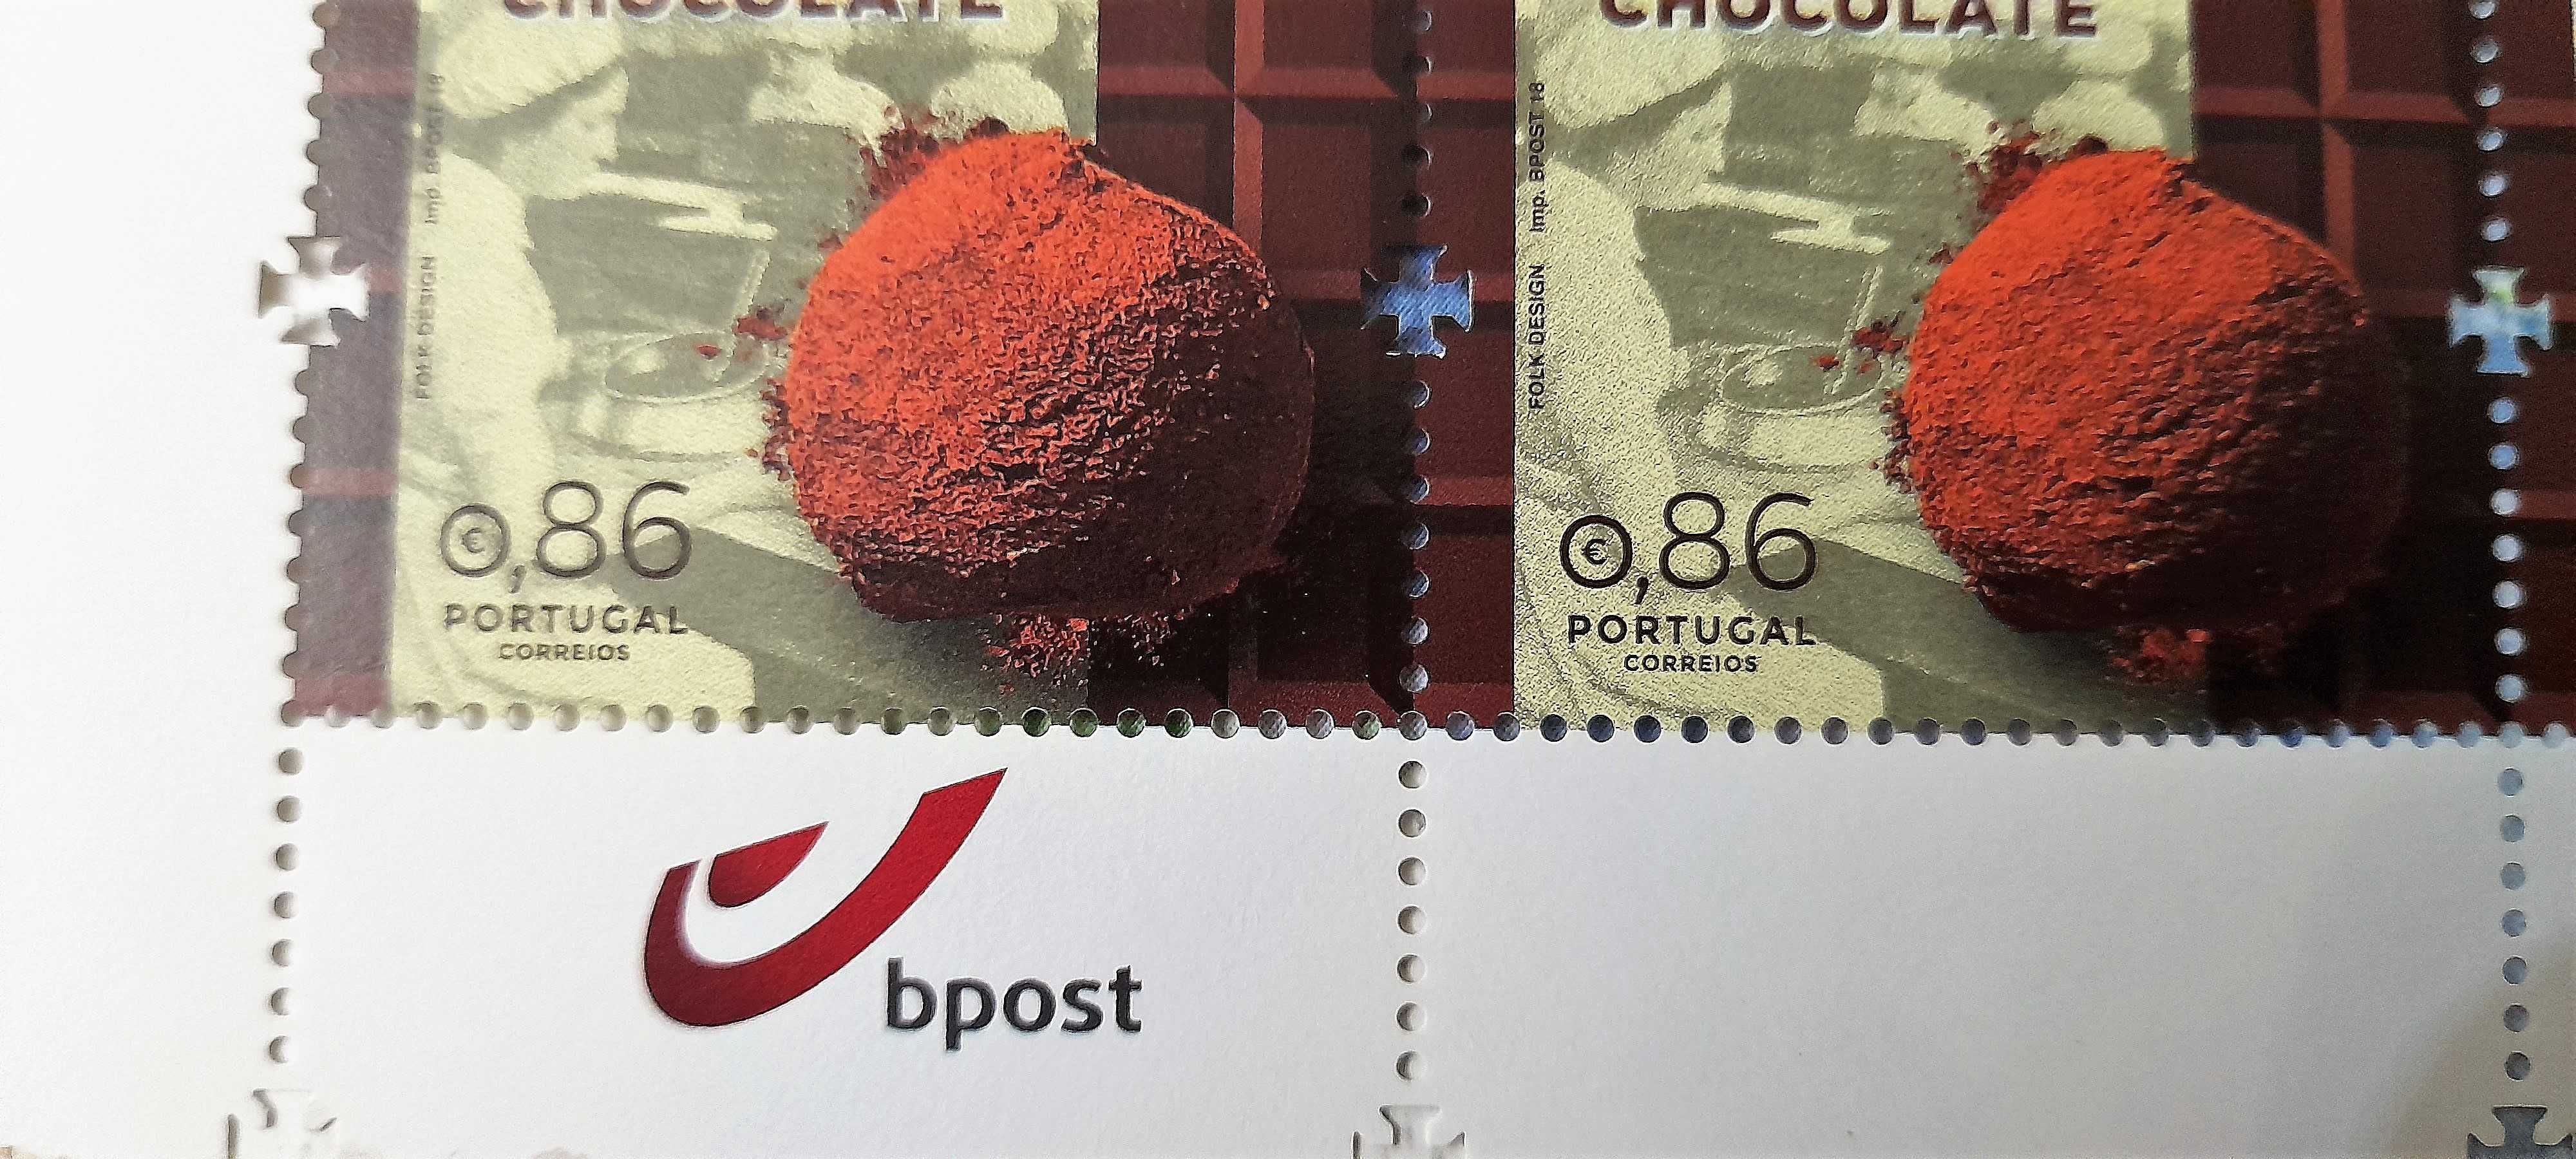 Selo 0,86€ "Chocolate" 2018 em circulação vendo por €0,75